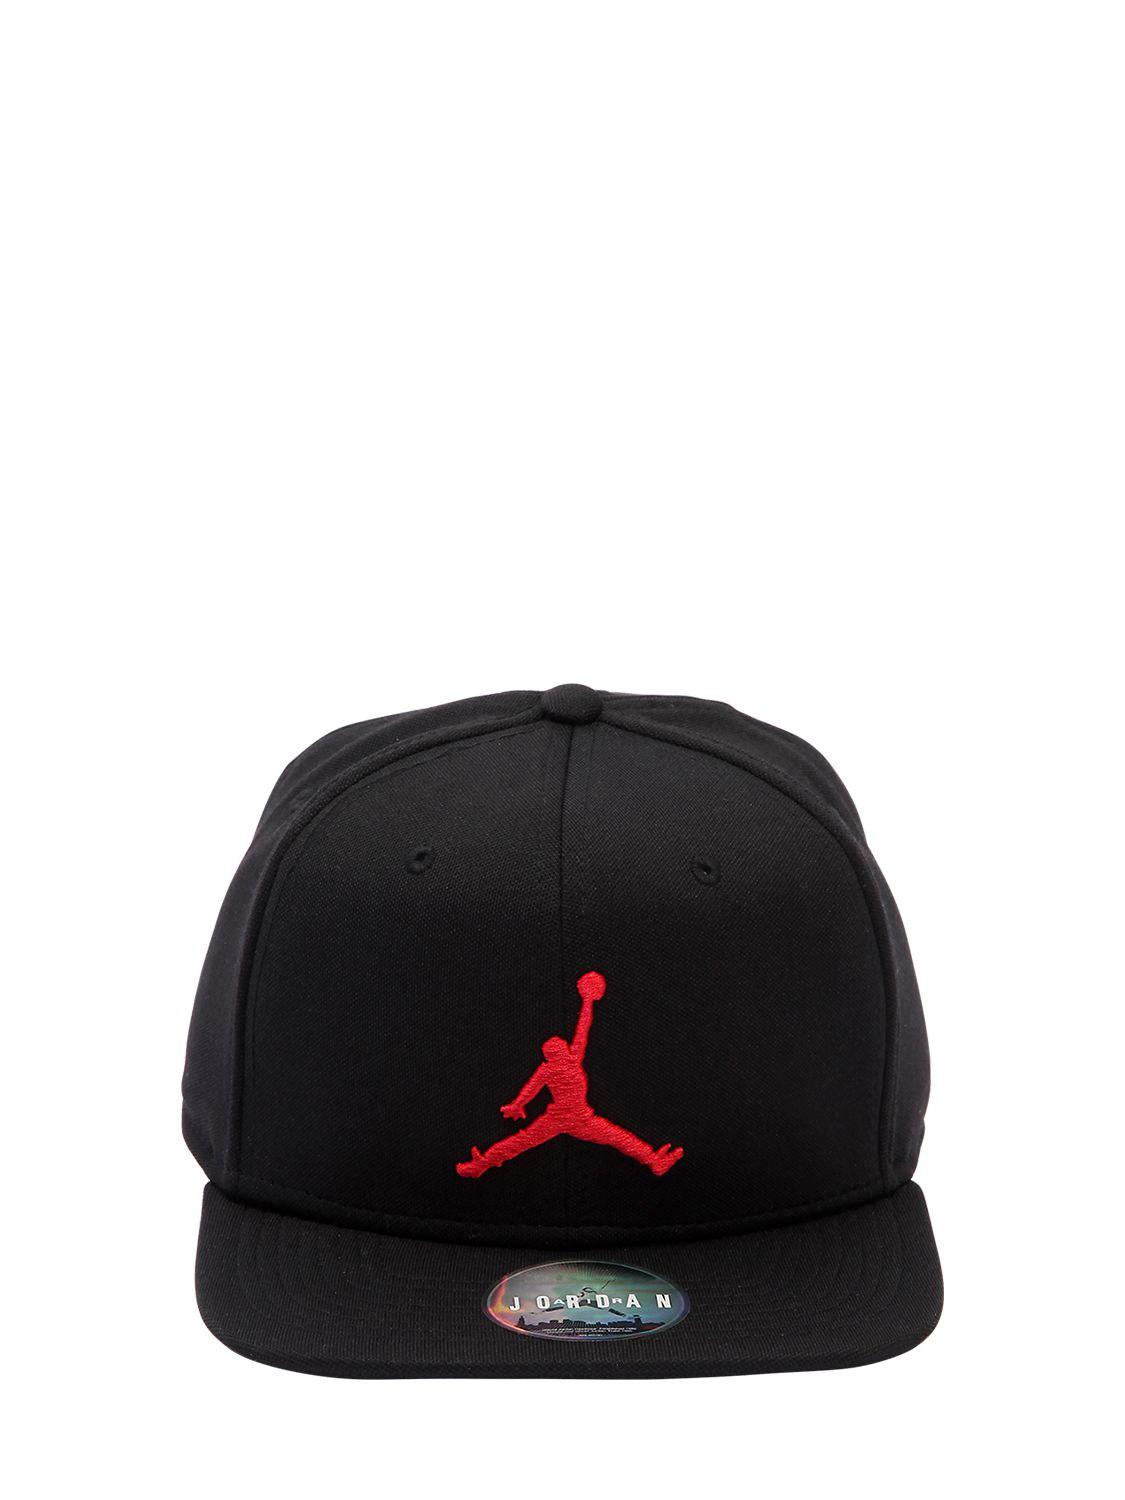 Nike Cotton Air Jordan Jumpman Hat in Black for Men - Lyst